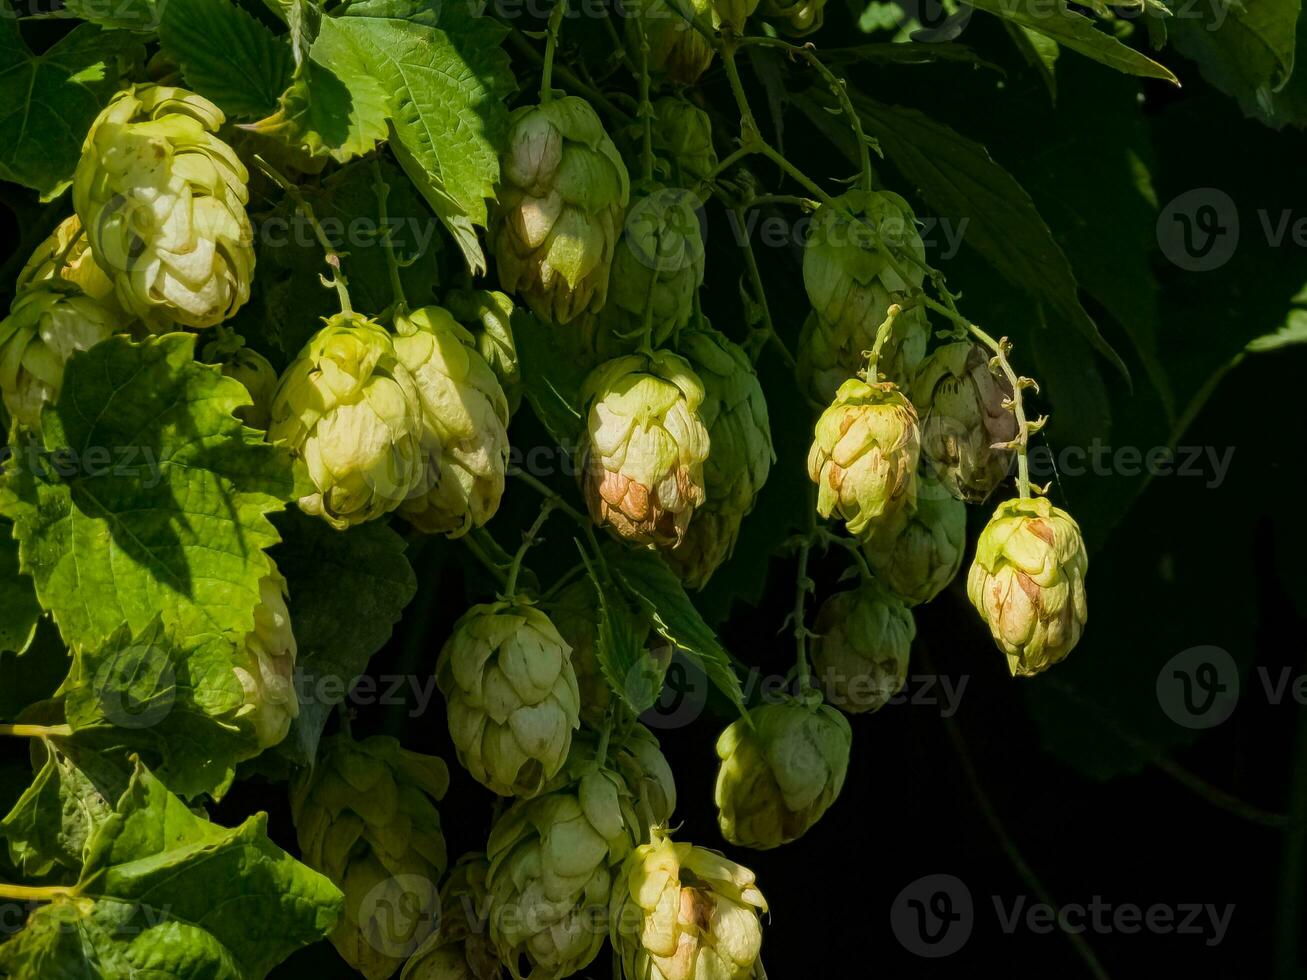 Reifung im Herbst von frisch Grün hop Zapfen auf ein Ast. benutzt zum Herstellung Bier, brot, im Medizin, Pharmakologie, Nahansicht foto